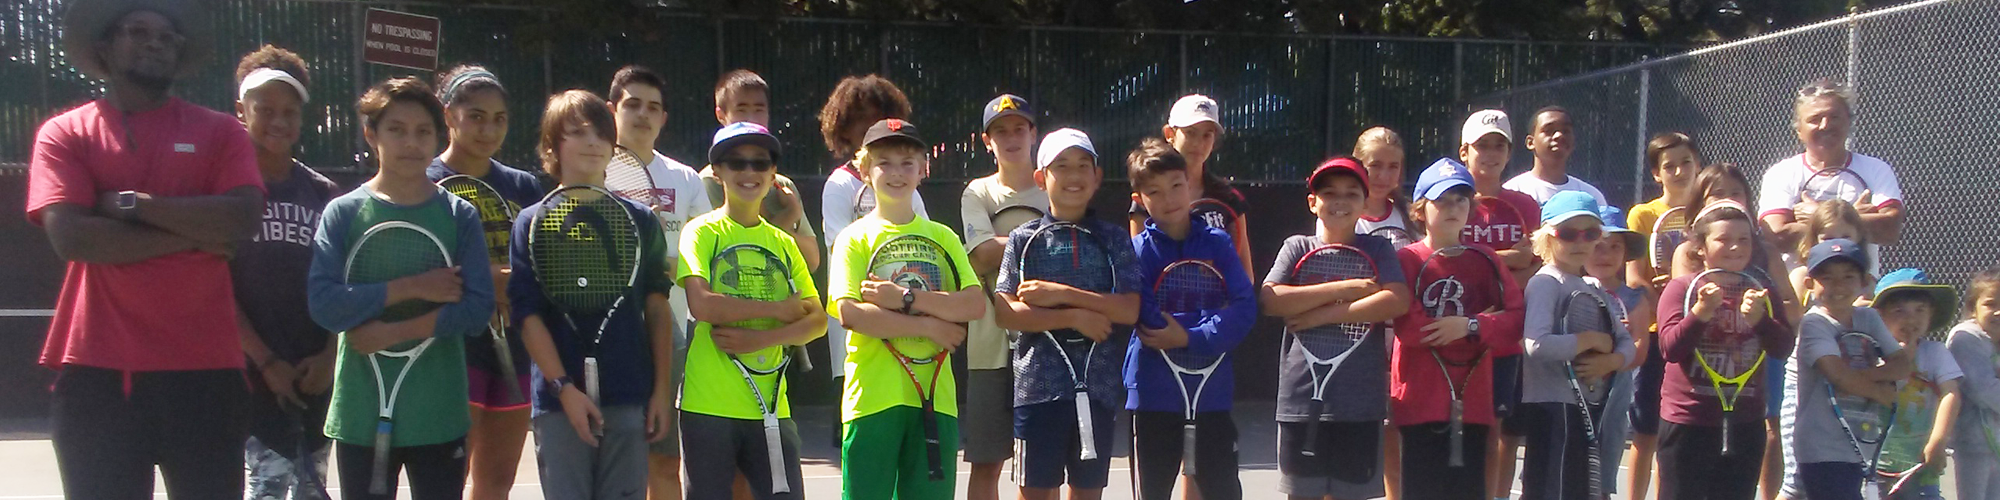 Youth Tennis Children